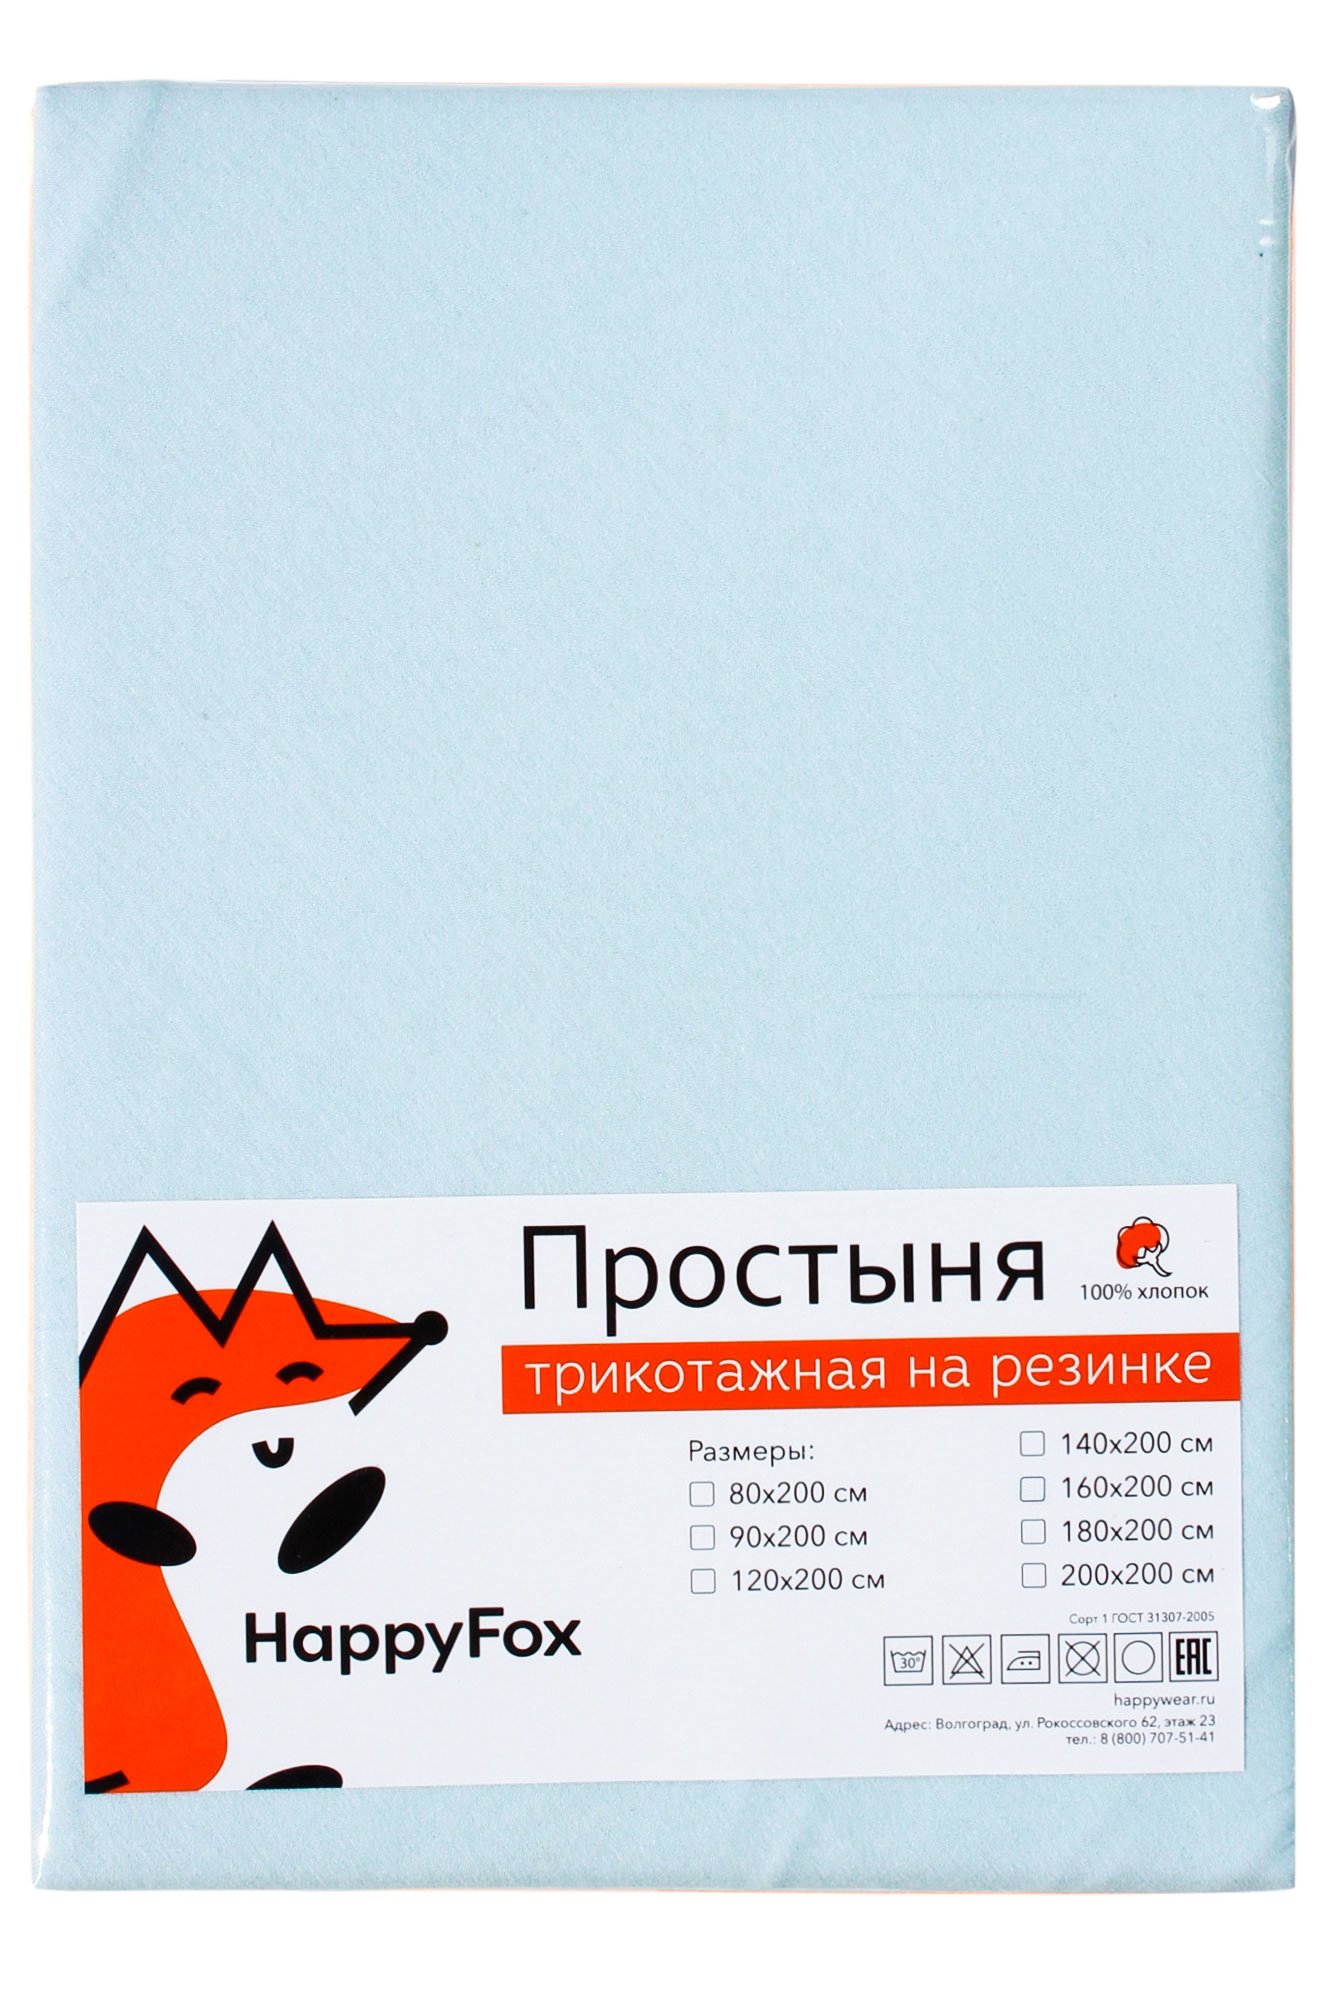 Простыня на резинке 60x120 Happy Fox Home